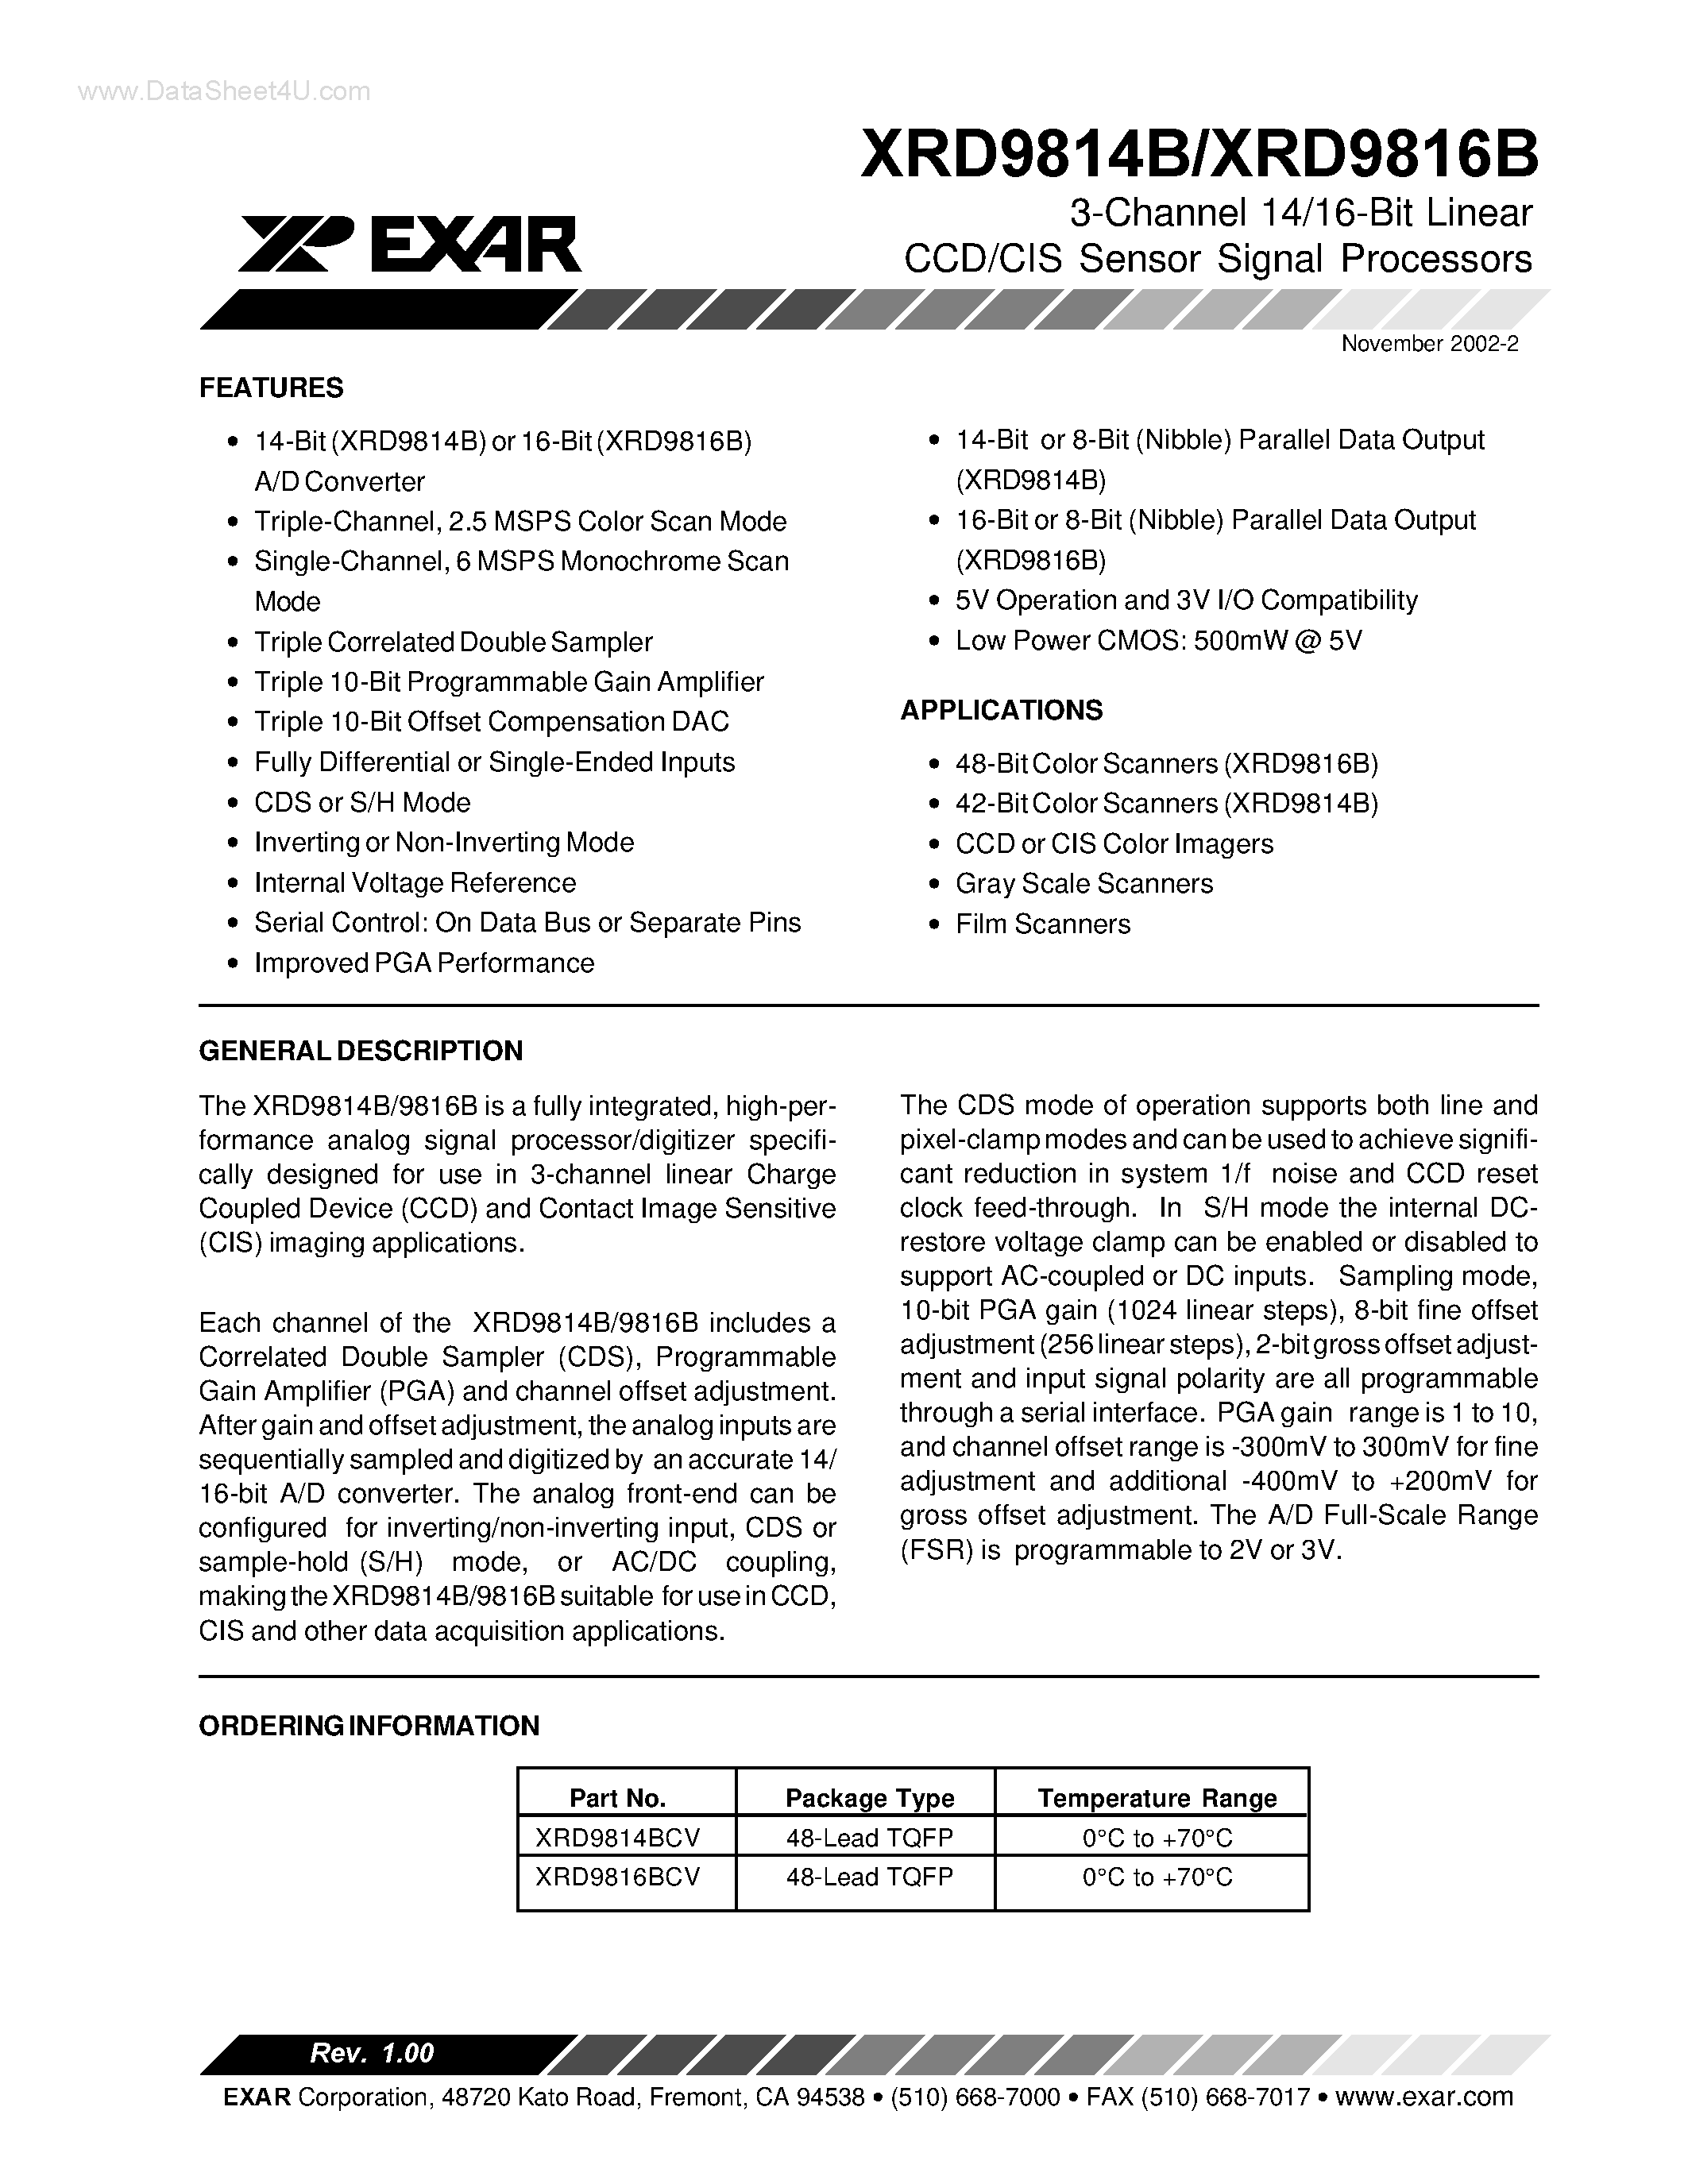 Datasheet XRD9814B - (XRD9814B / XRD9816B) 3-Channel 14/16-Bit Linear CCD/CIS Sensor Signal Processors page 1